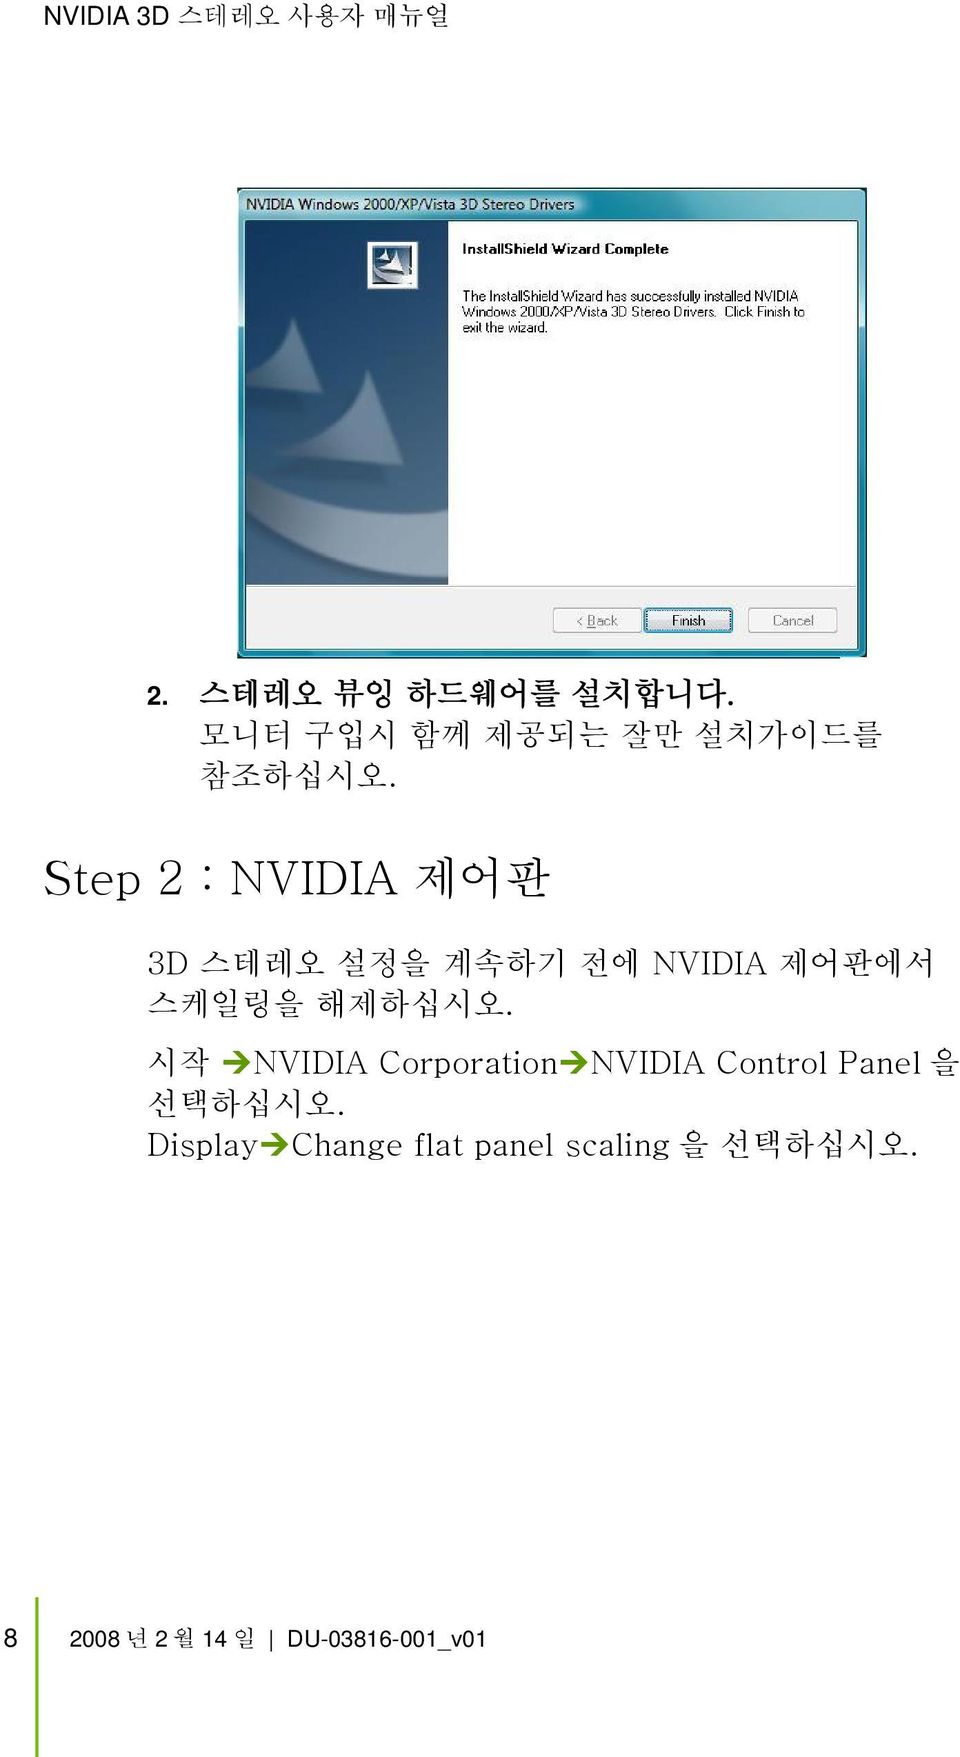 Step 2 : NVIDIA 제어판 3D 스테레오 설정을 계속하기 전에 NVIDIA 제어판에서 스케일링을 해제하십시오.